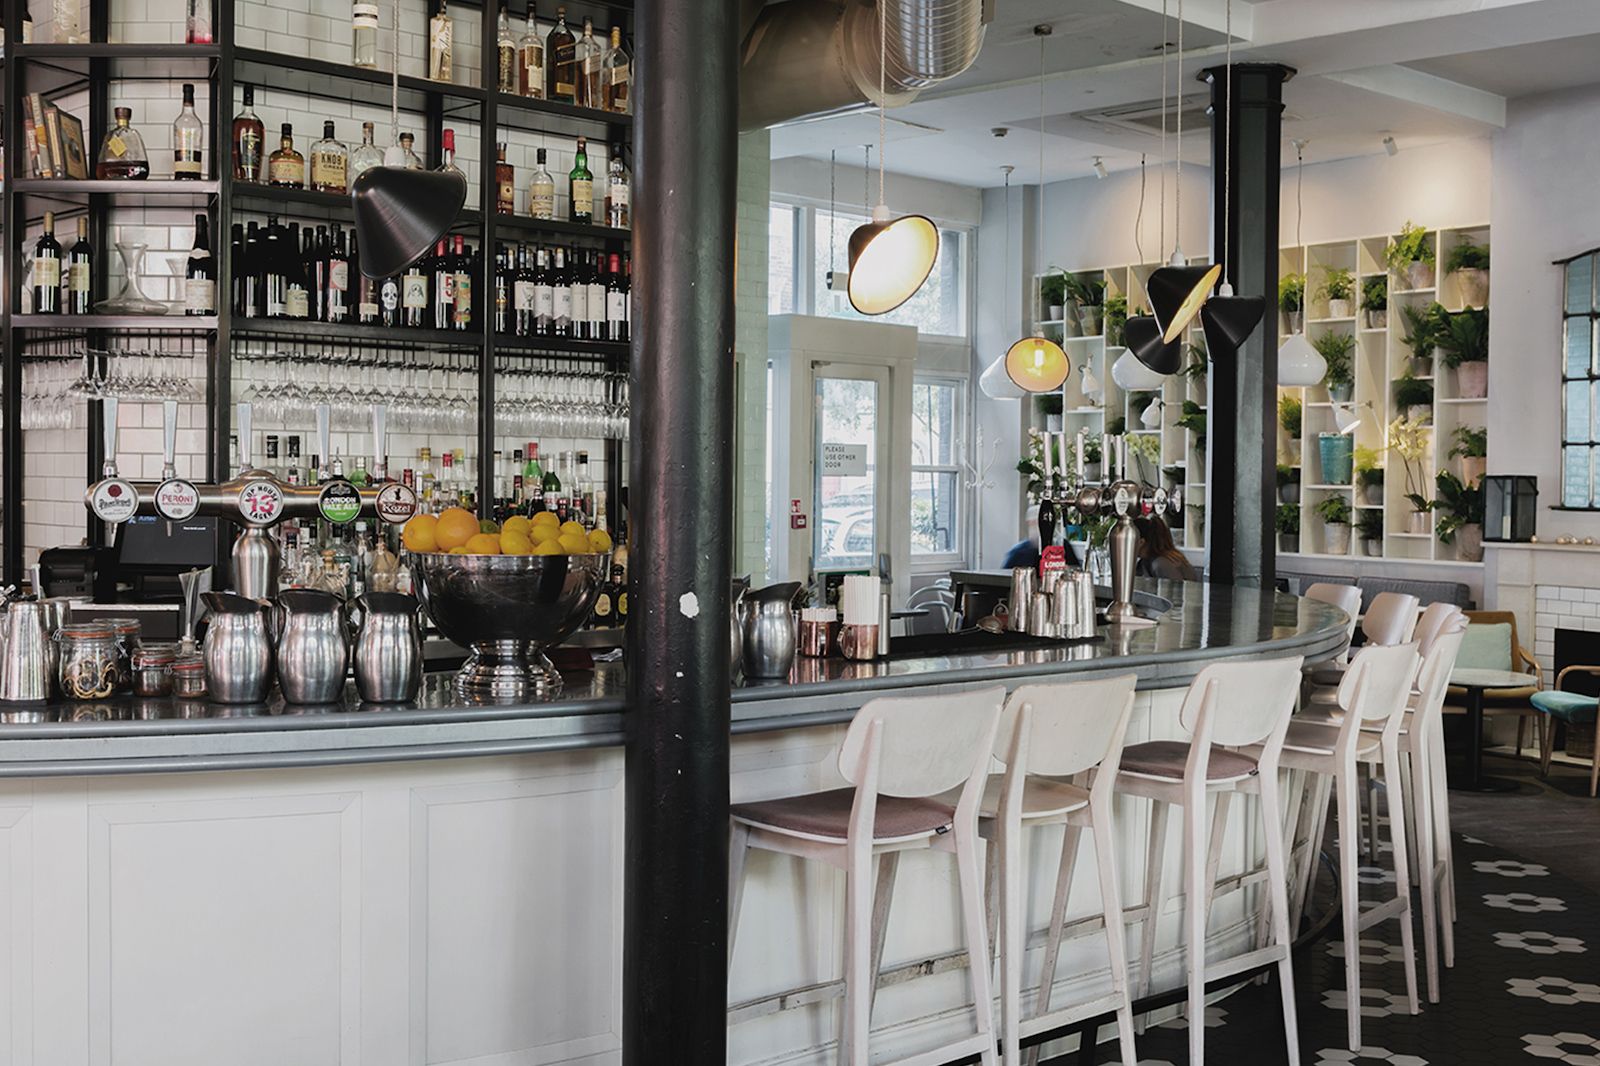 No 11 Pimlico Road – Bars in Victoria